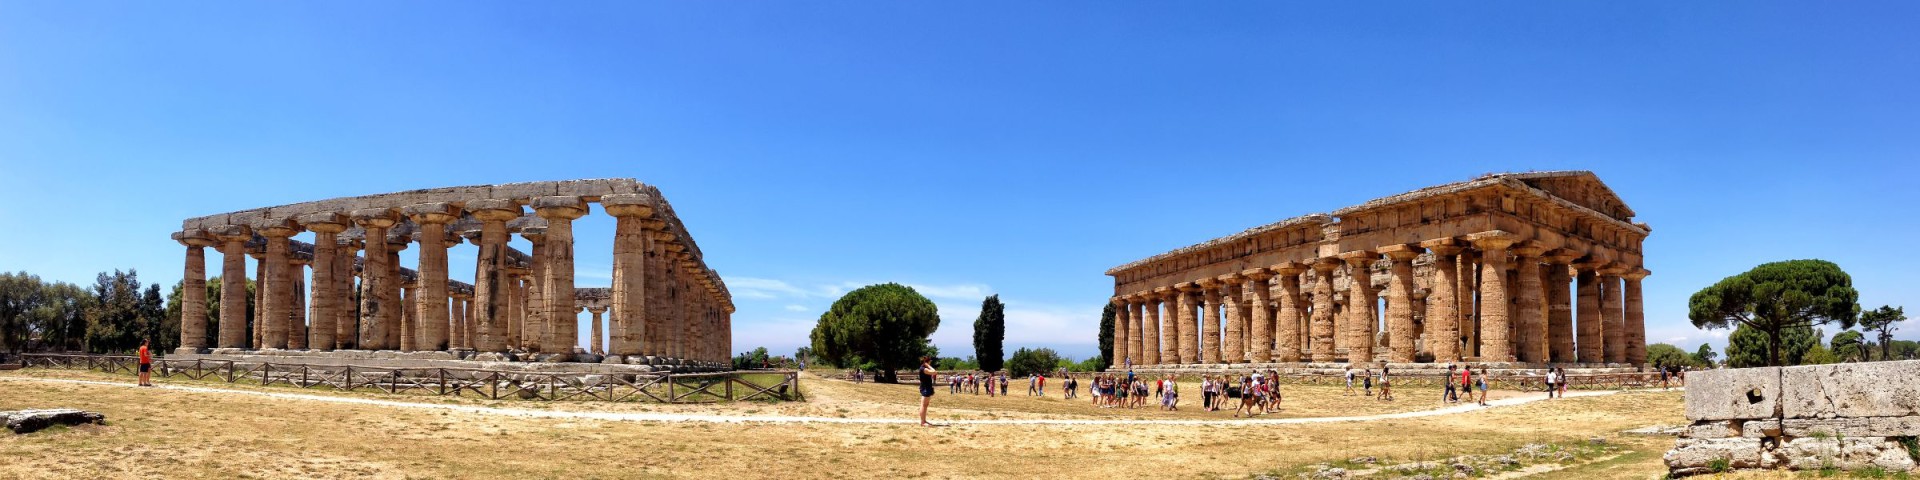 Paestum, ruiny chrámů Neptuna (Nettuno) a Héry (Hera)